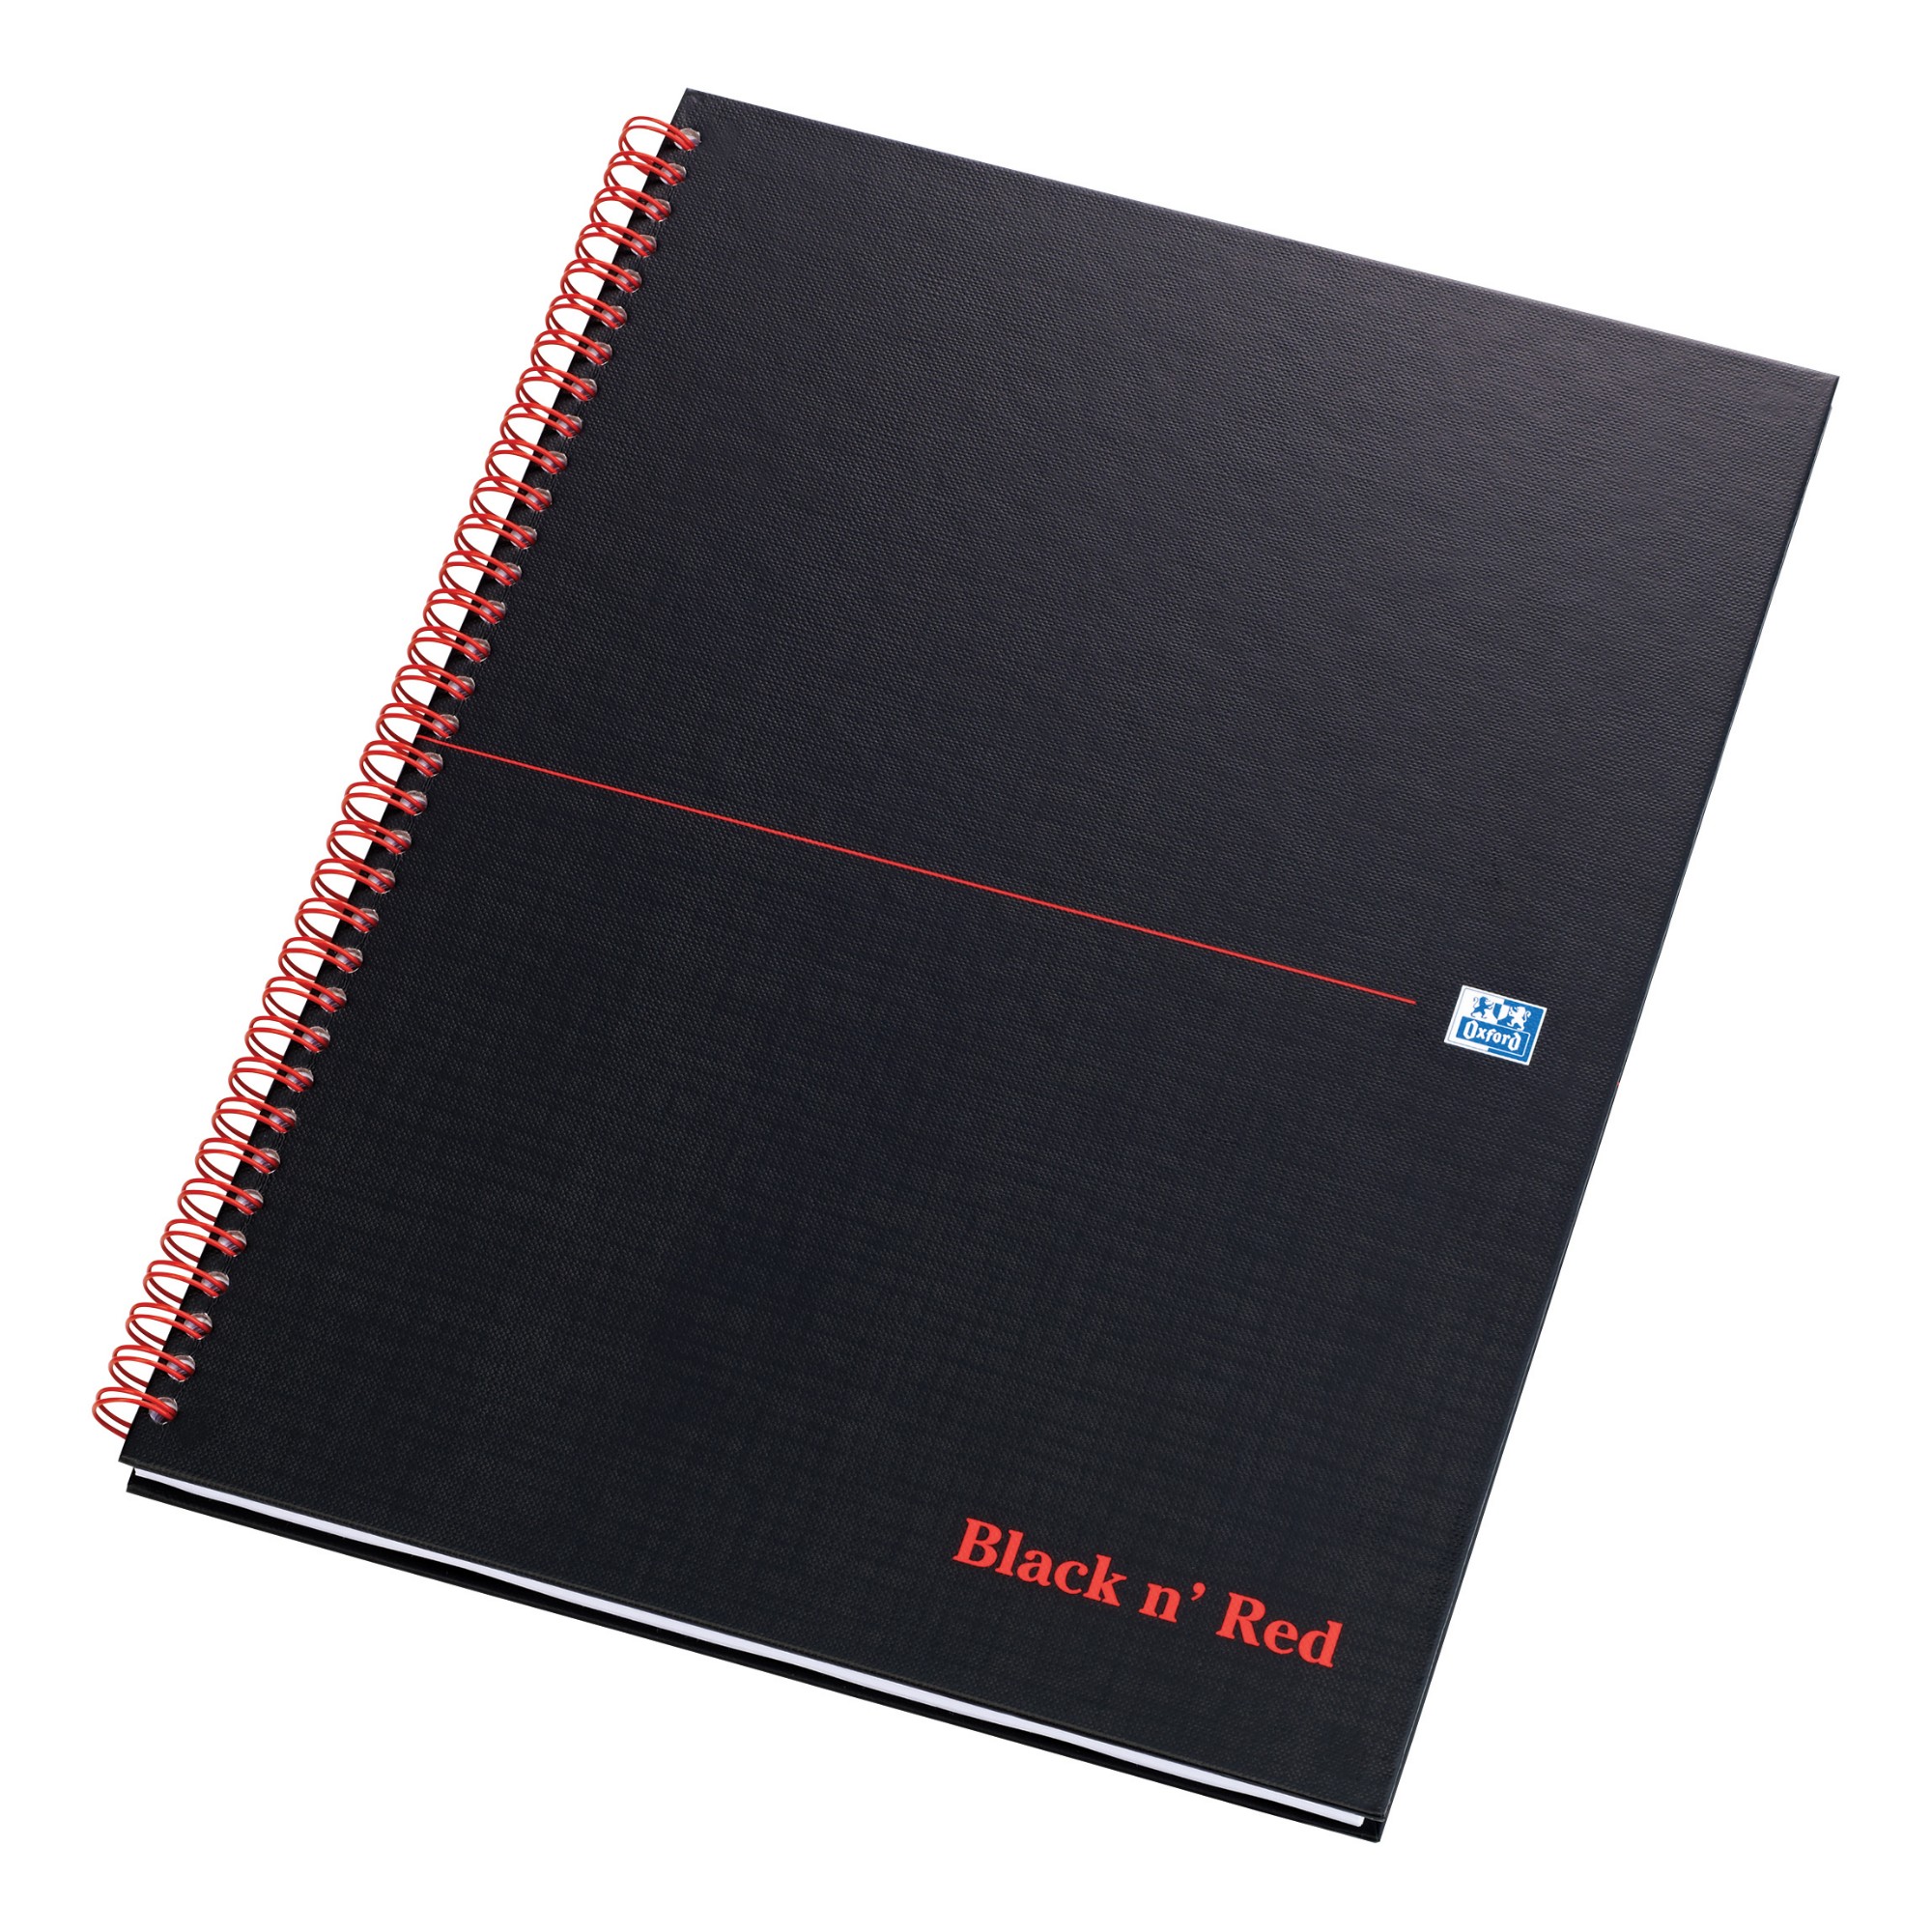 Black n' Red A4Wbd Matt Blk Rld 100080173